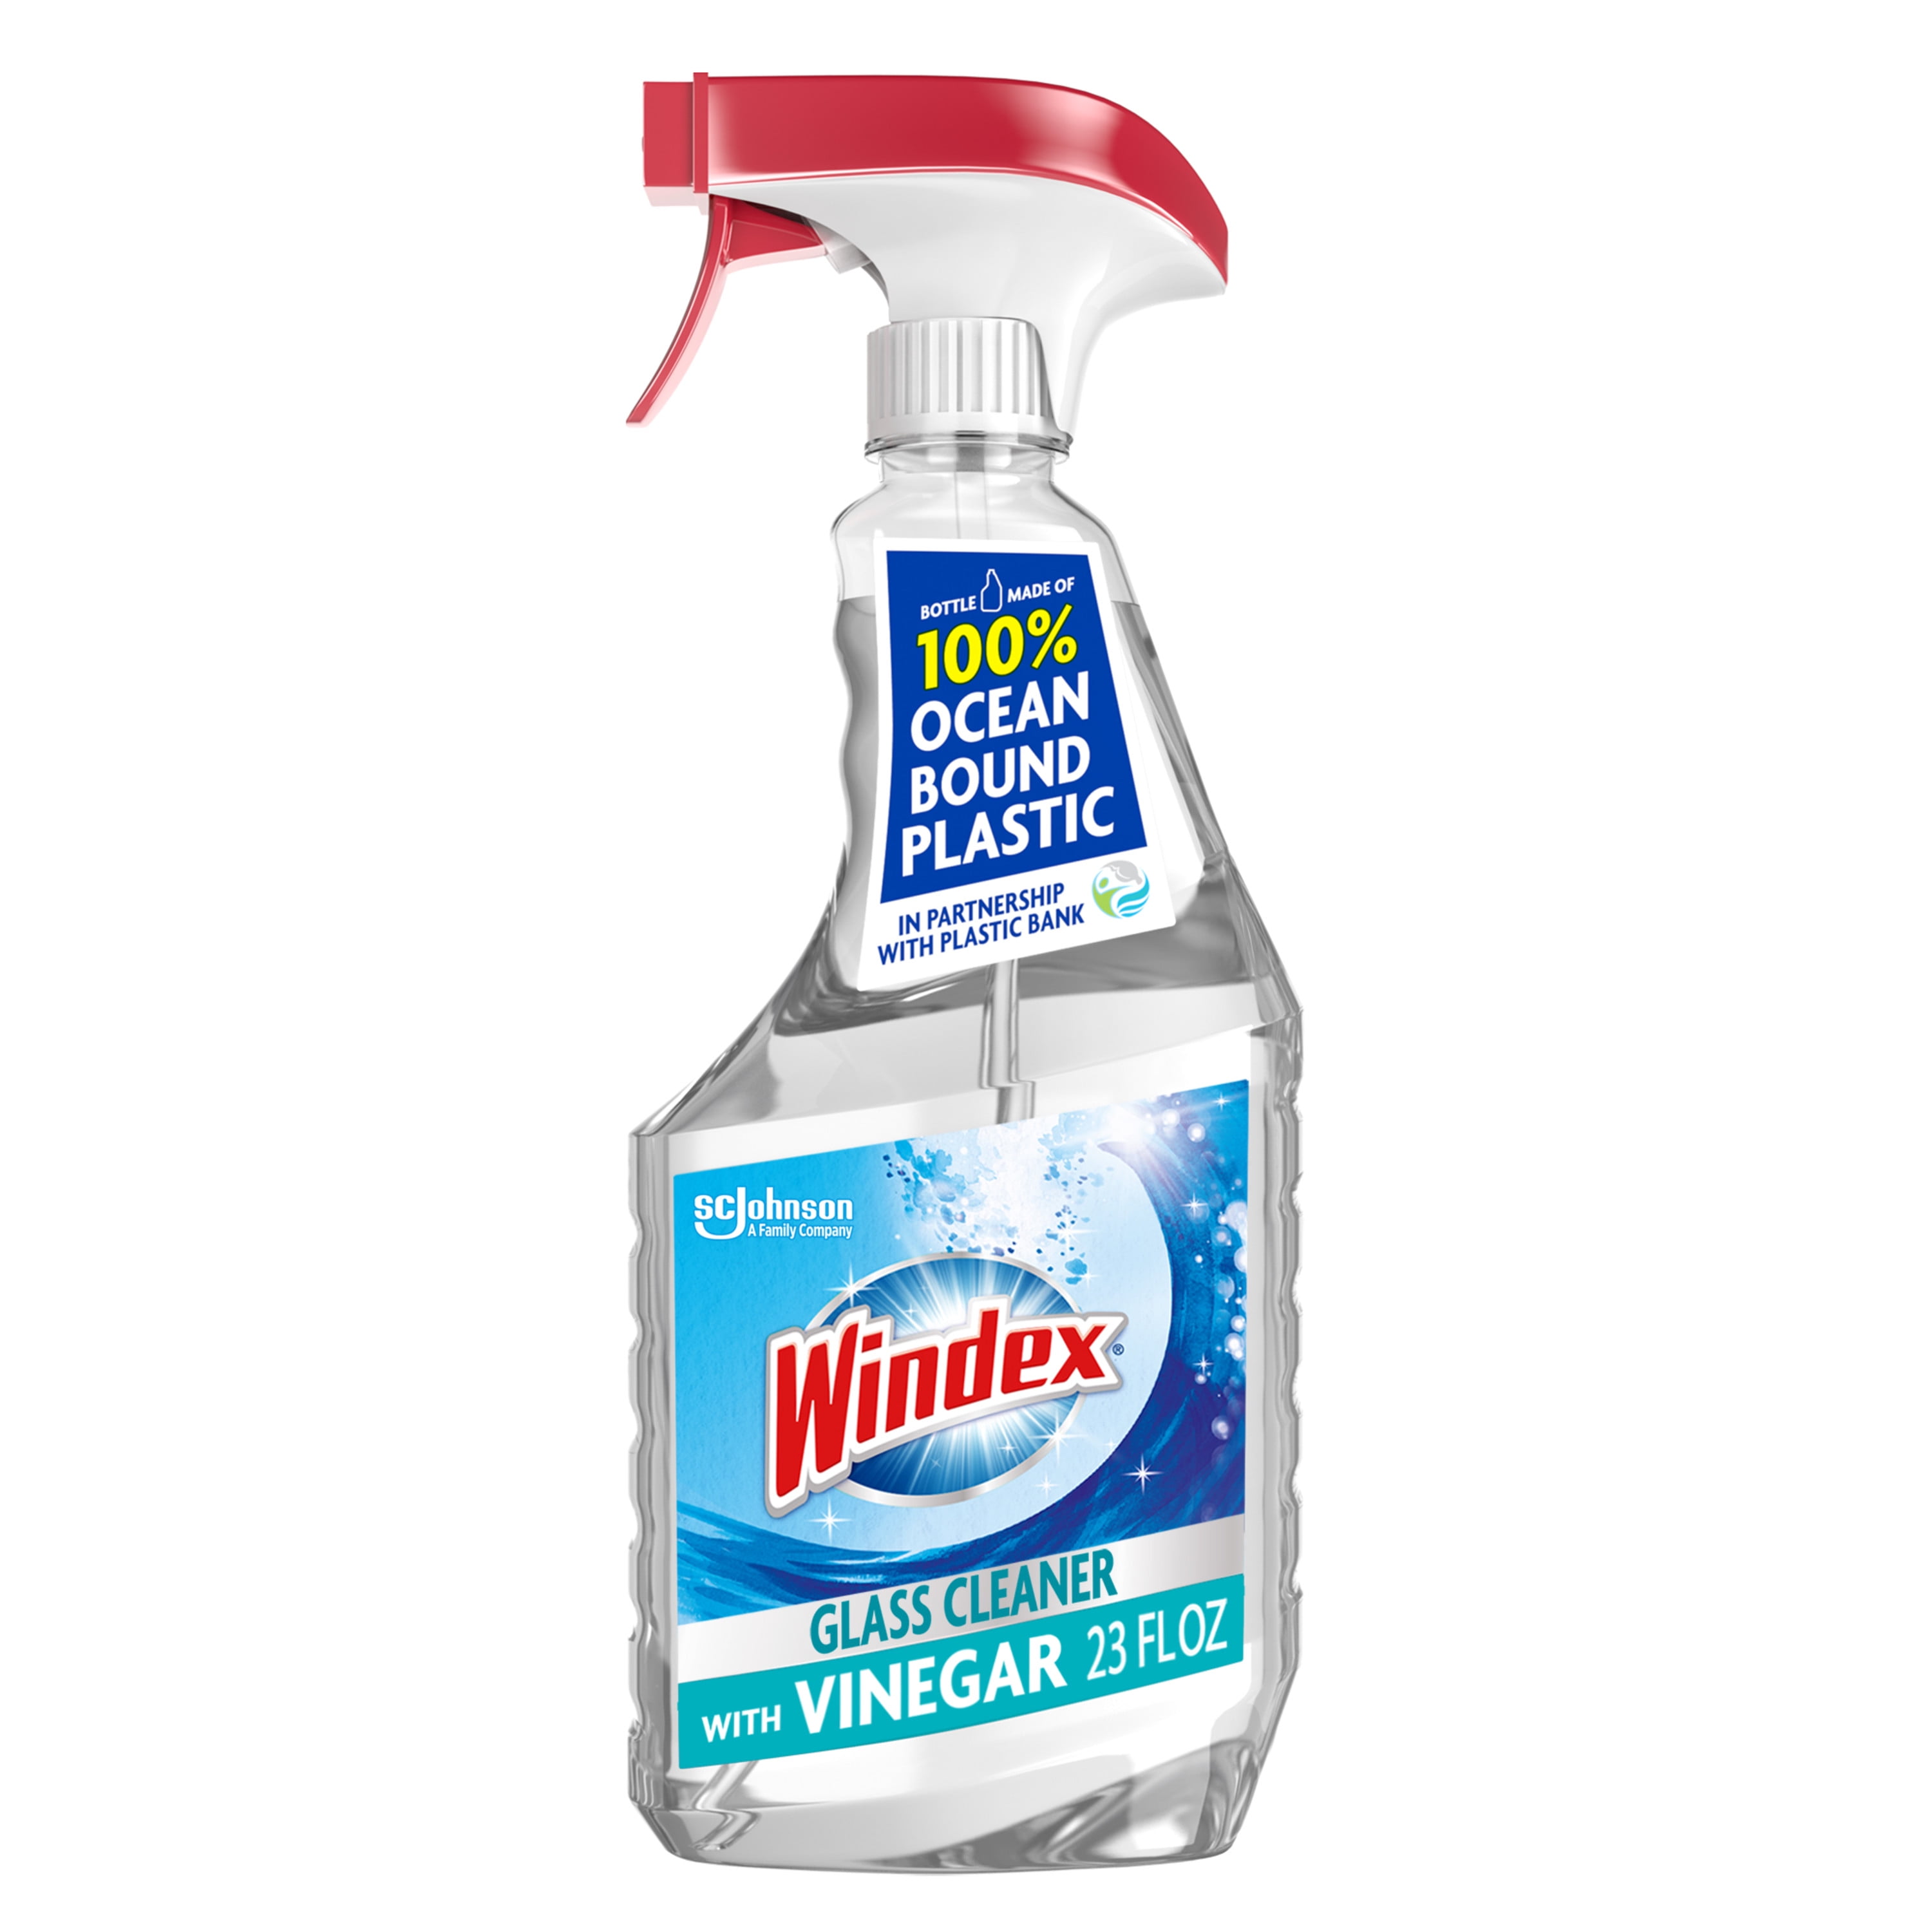 Windex with Vinegar Glass Cleaner, Spray Bottle, 23 fl oz - 